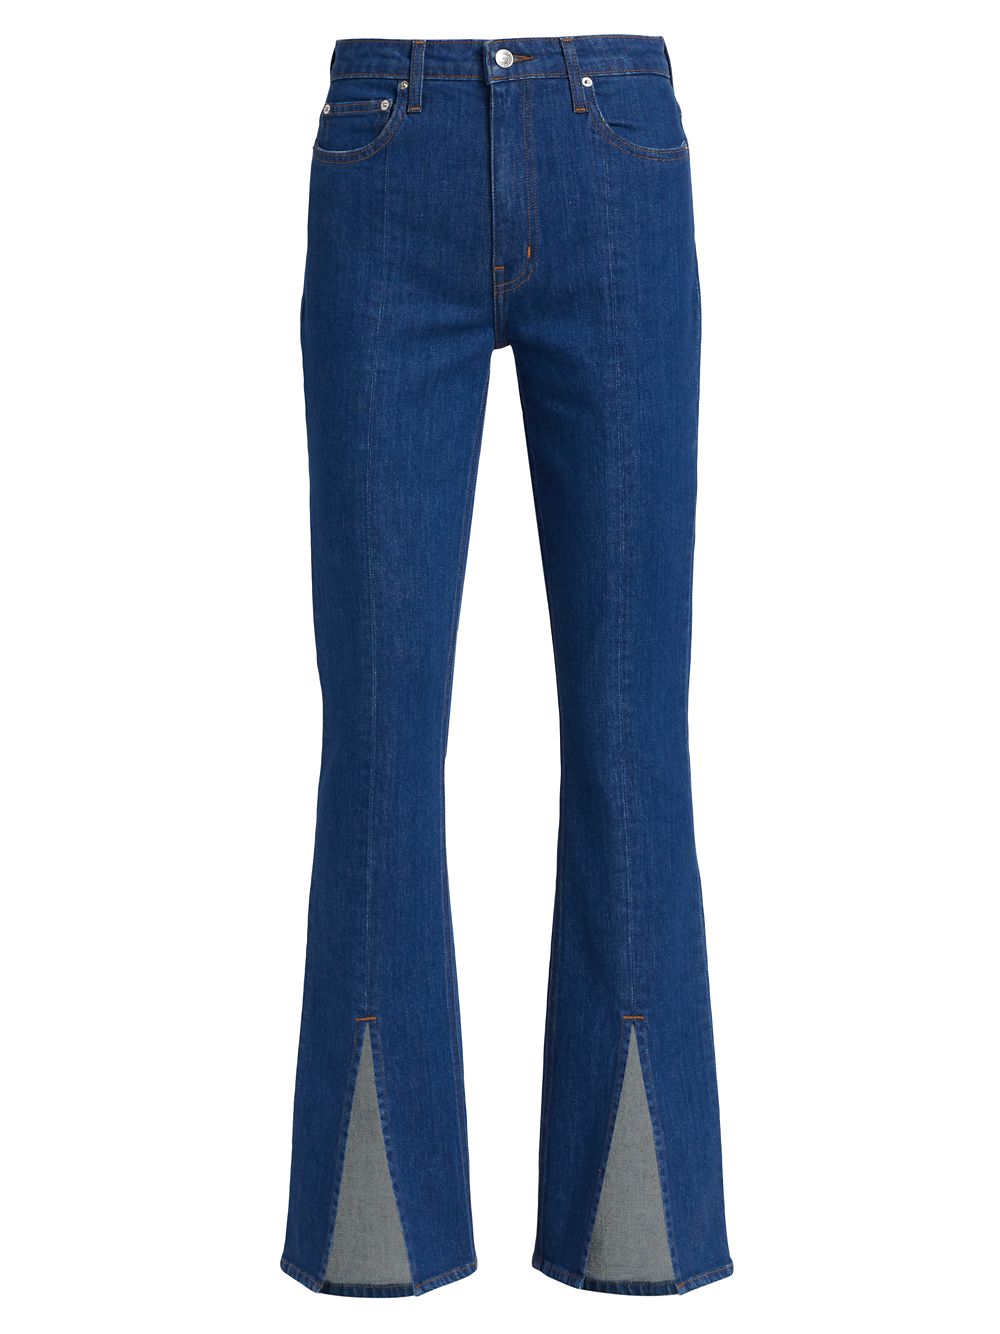 Расклешенные джинсы Lucia с высокой посадкой и разрезами Derek Lam 10 Crosby, синий